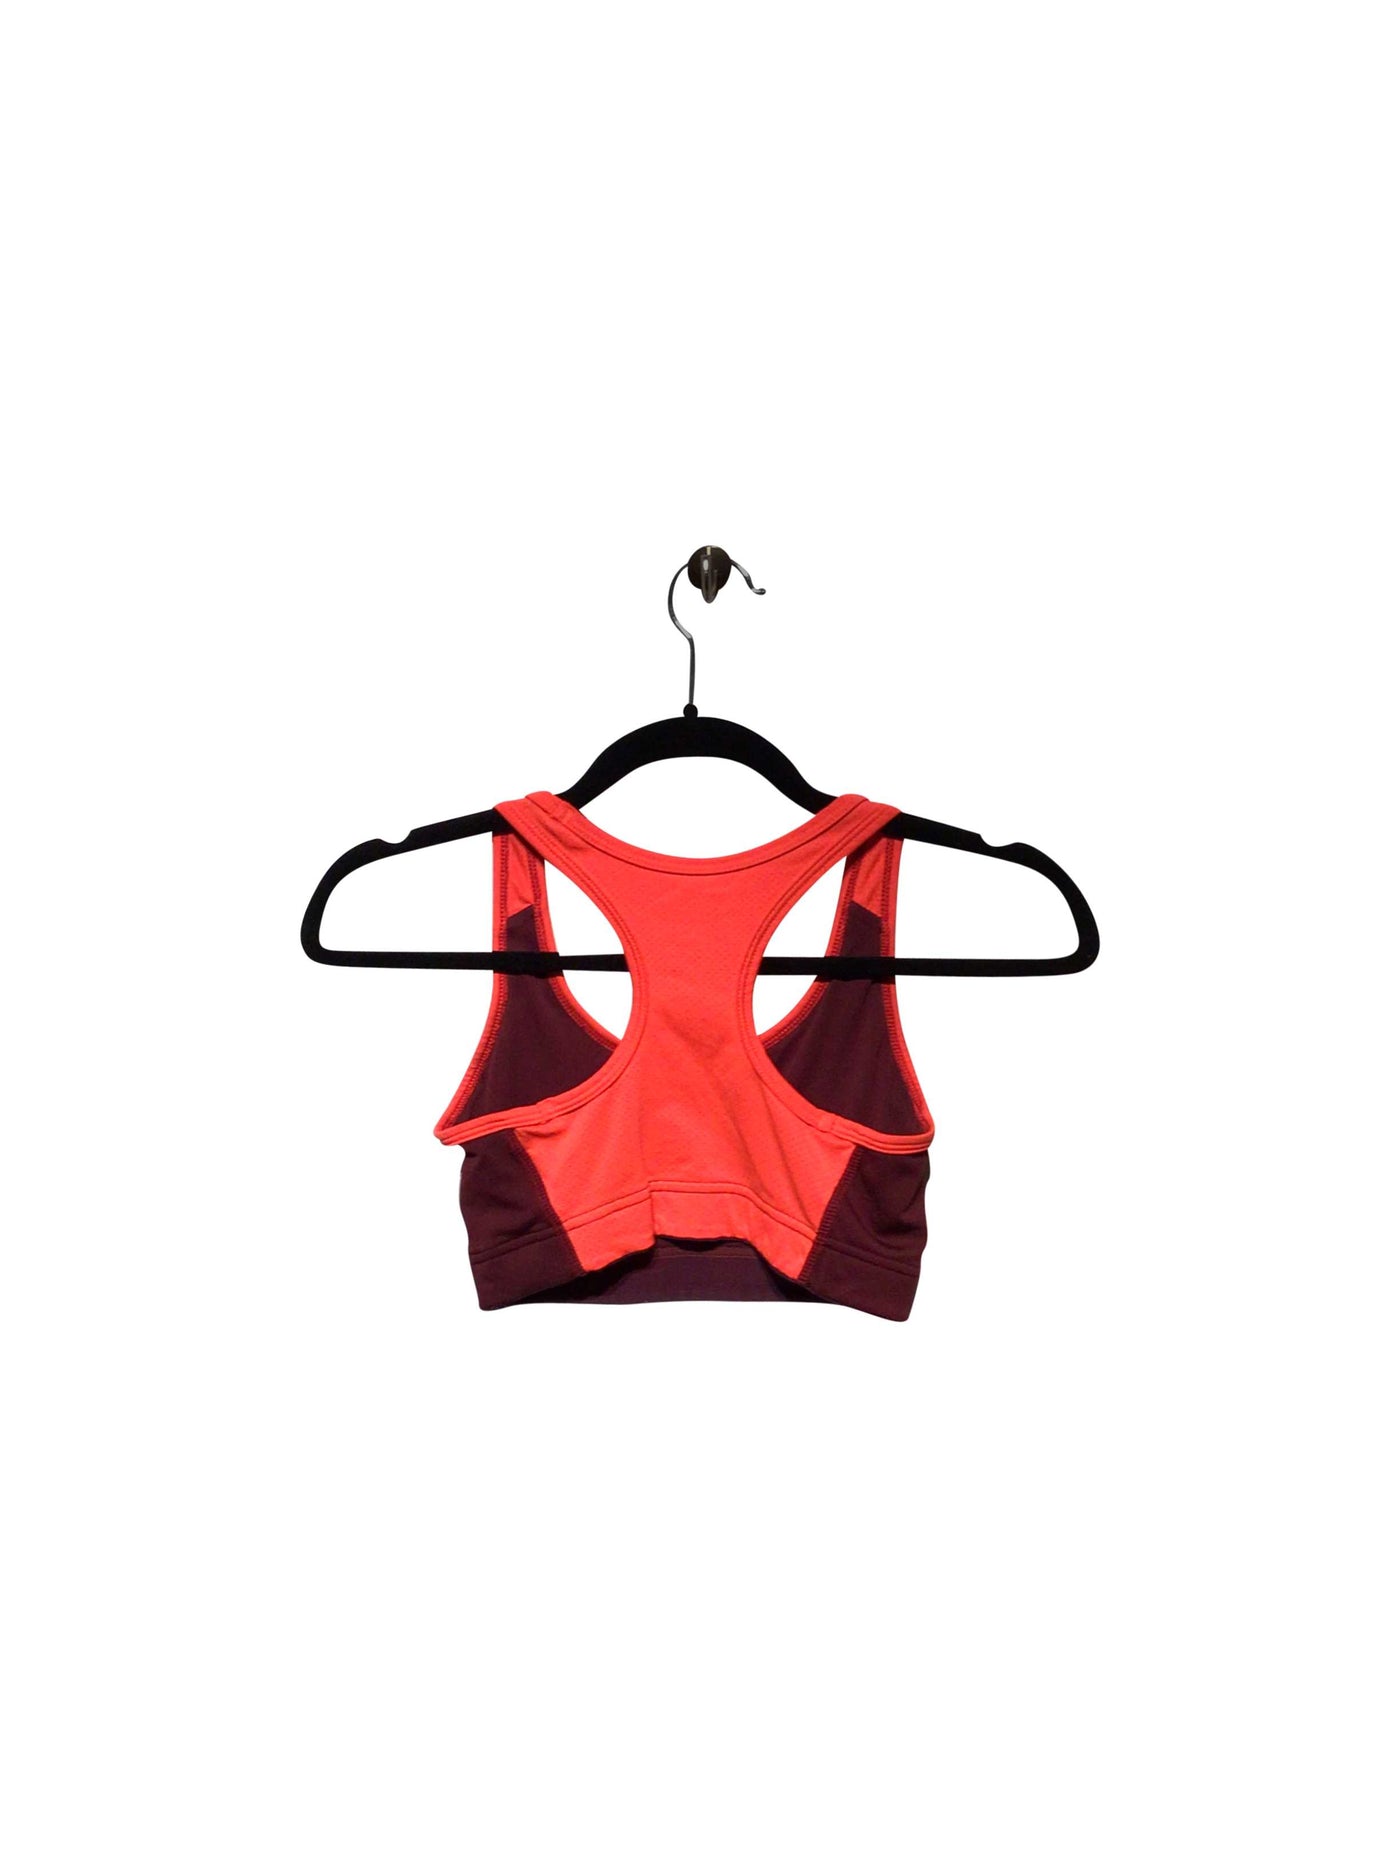 H&M Activewear Sport bra in Red  -  XS  6.99 Koop